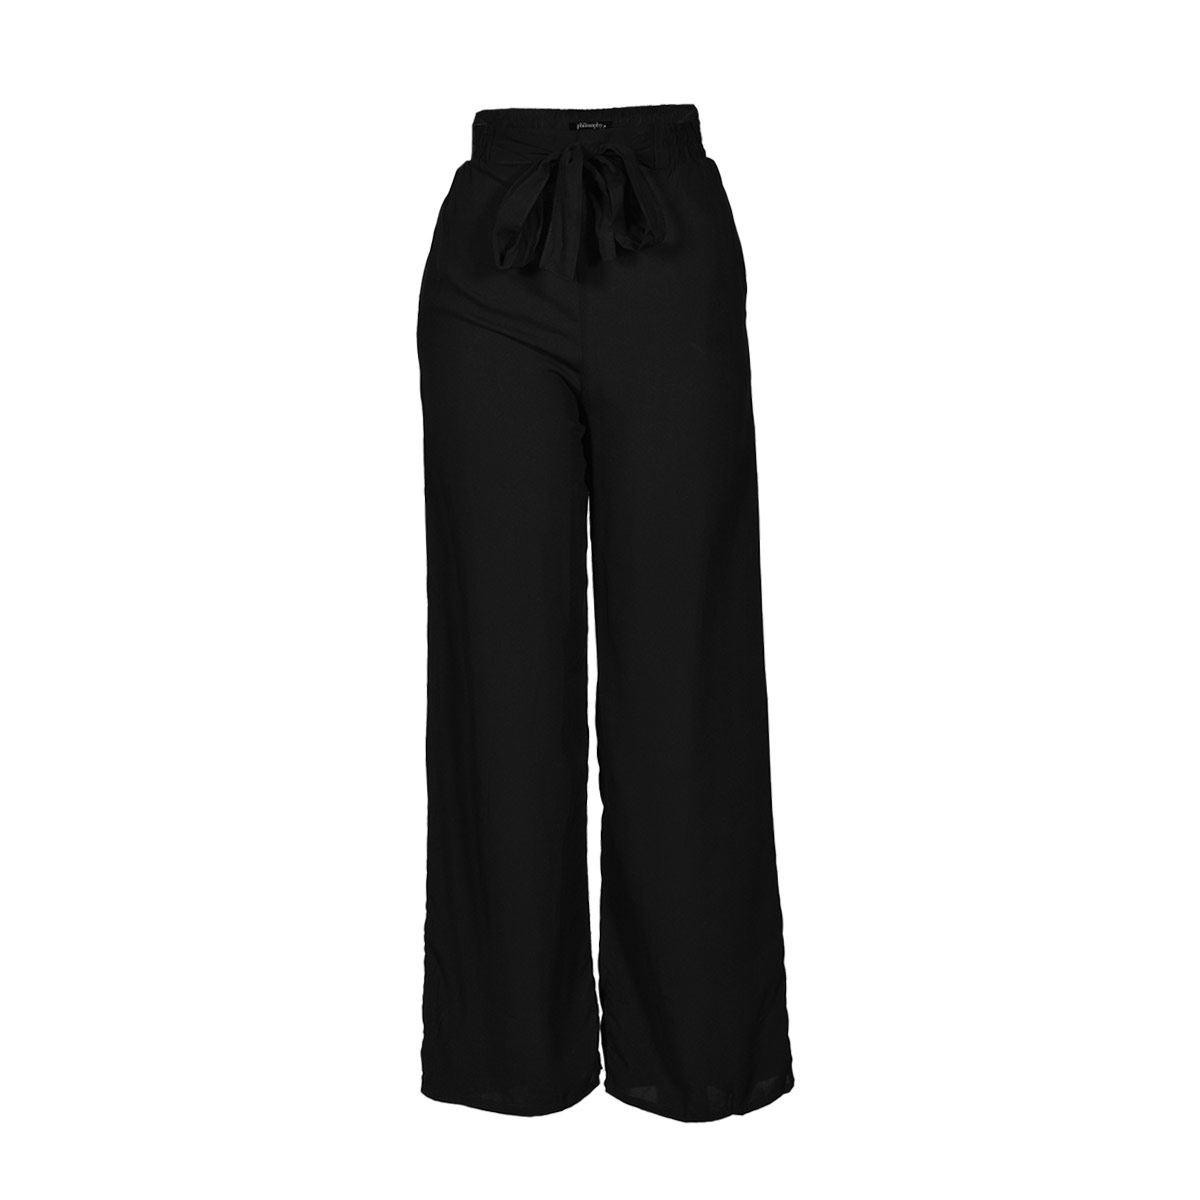 pantalón elegante para mujer en color negro con estampado liso 15071 